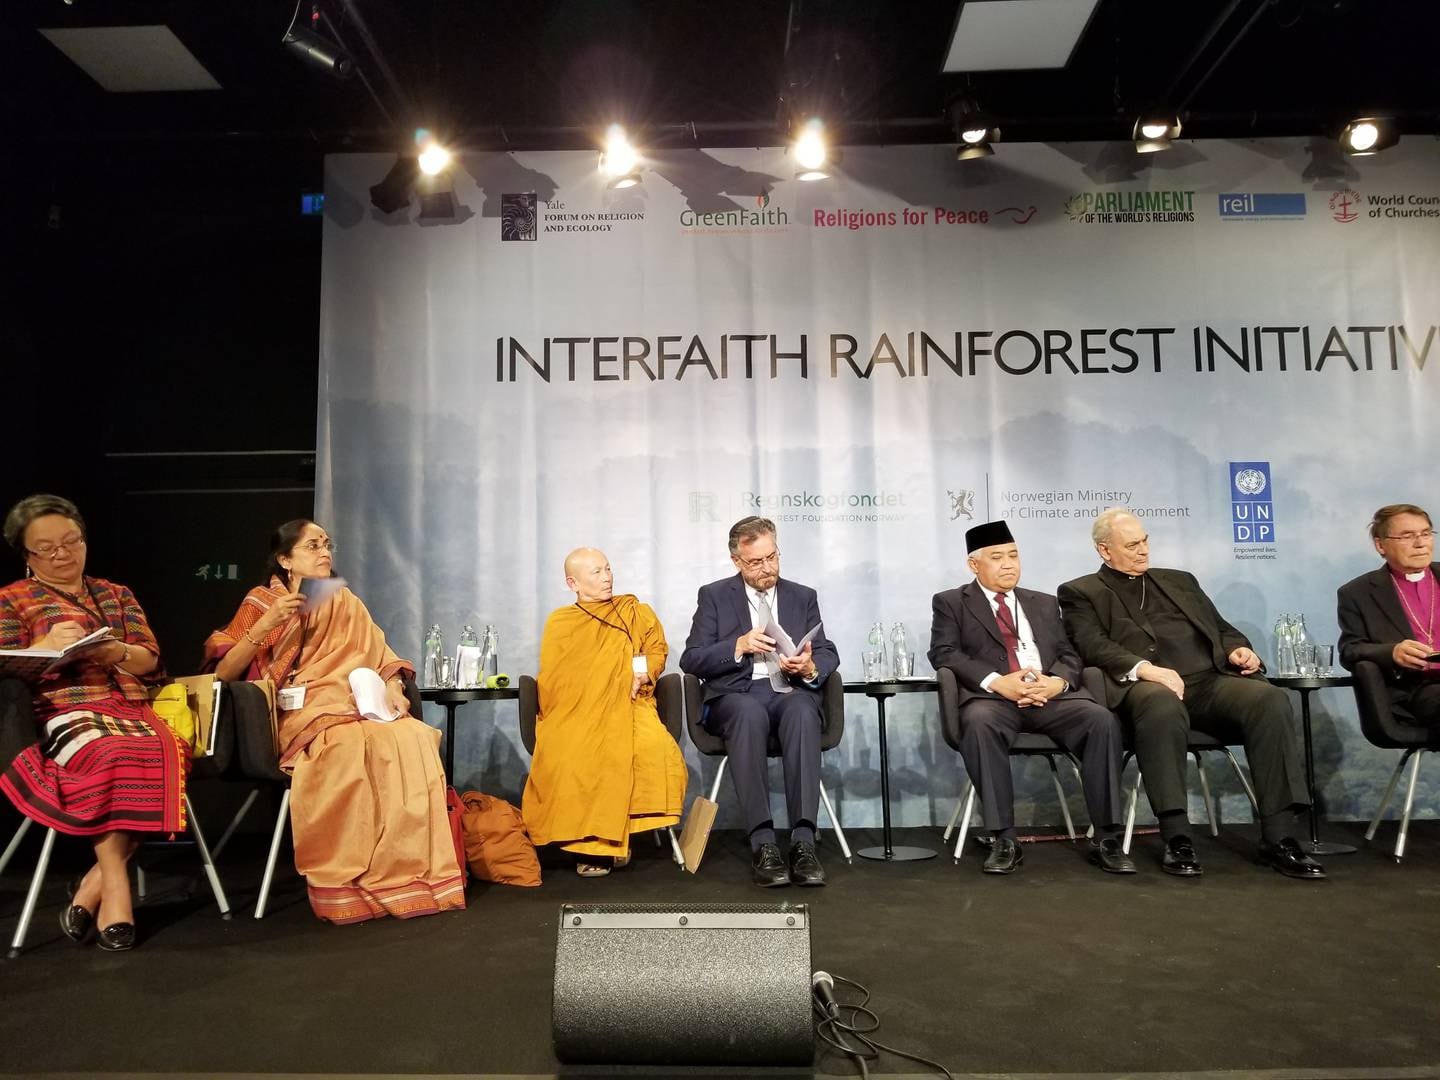 Det interreligiøse regnskogsinitiativet ble lansert på Nobelsprissenteret i Oslo i juni 2017. Representanter fra en rekke ulike religioner deltok, det samme gjorde flere urfolkrepresentanter, og kong Harald var til stede.